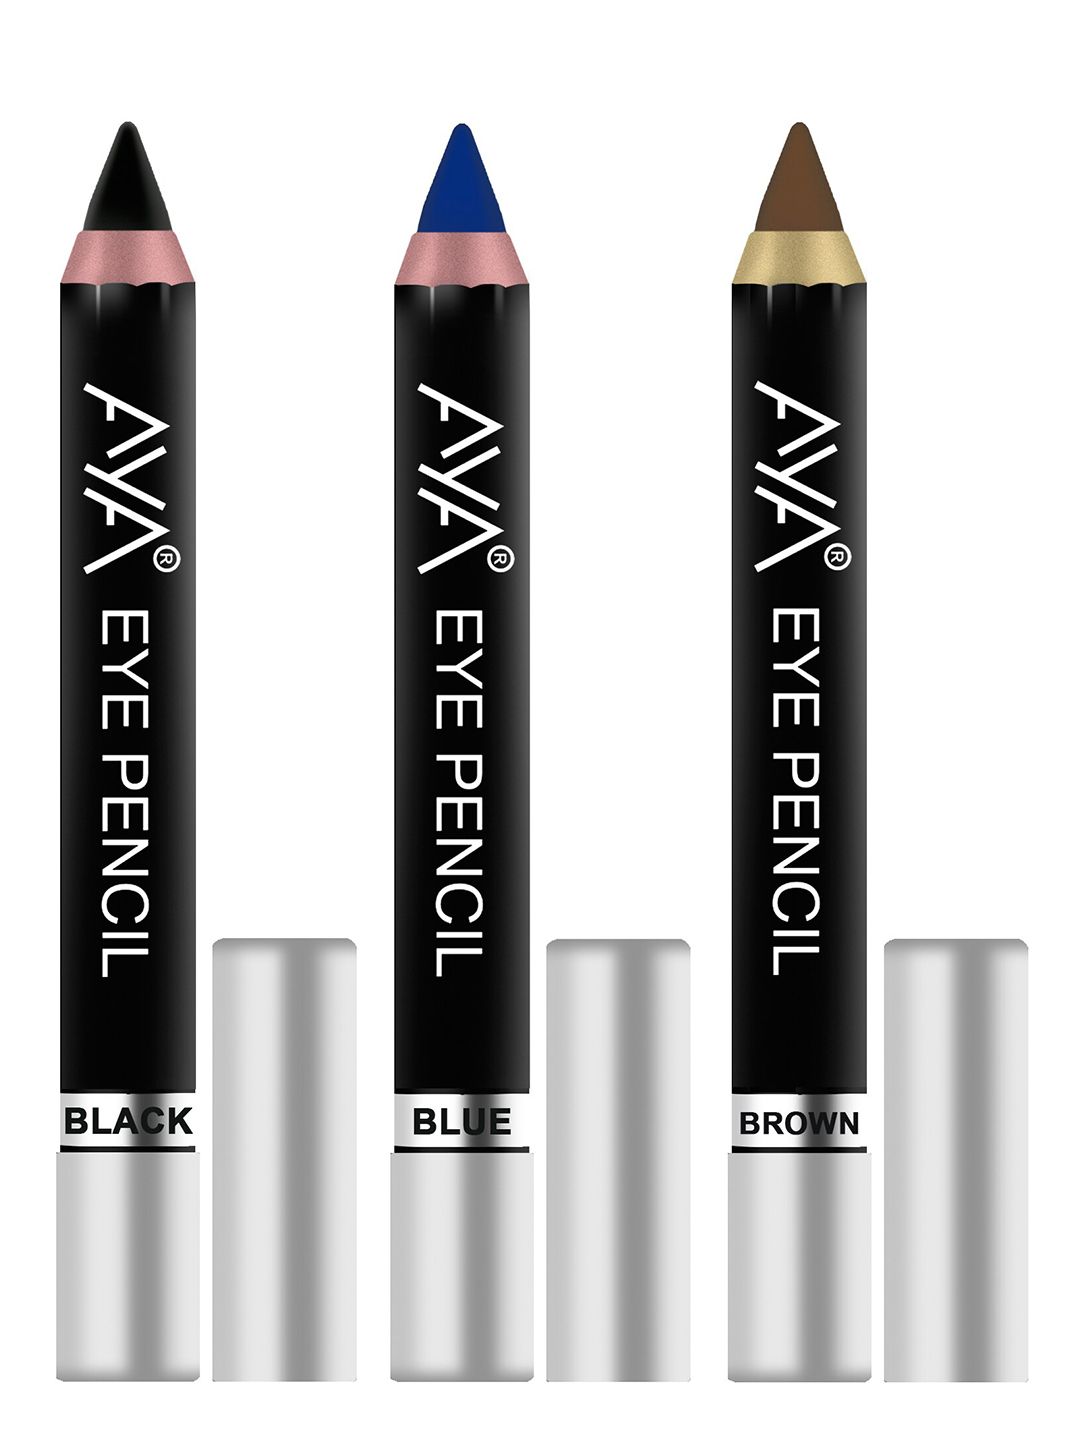 AYA Set of 3 Eye Liner Kajal Pencils in Black, Blue & Brown Price in India